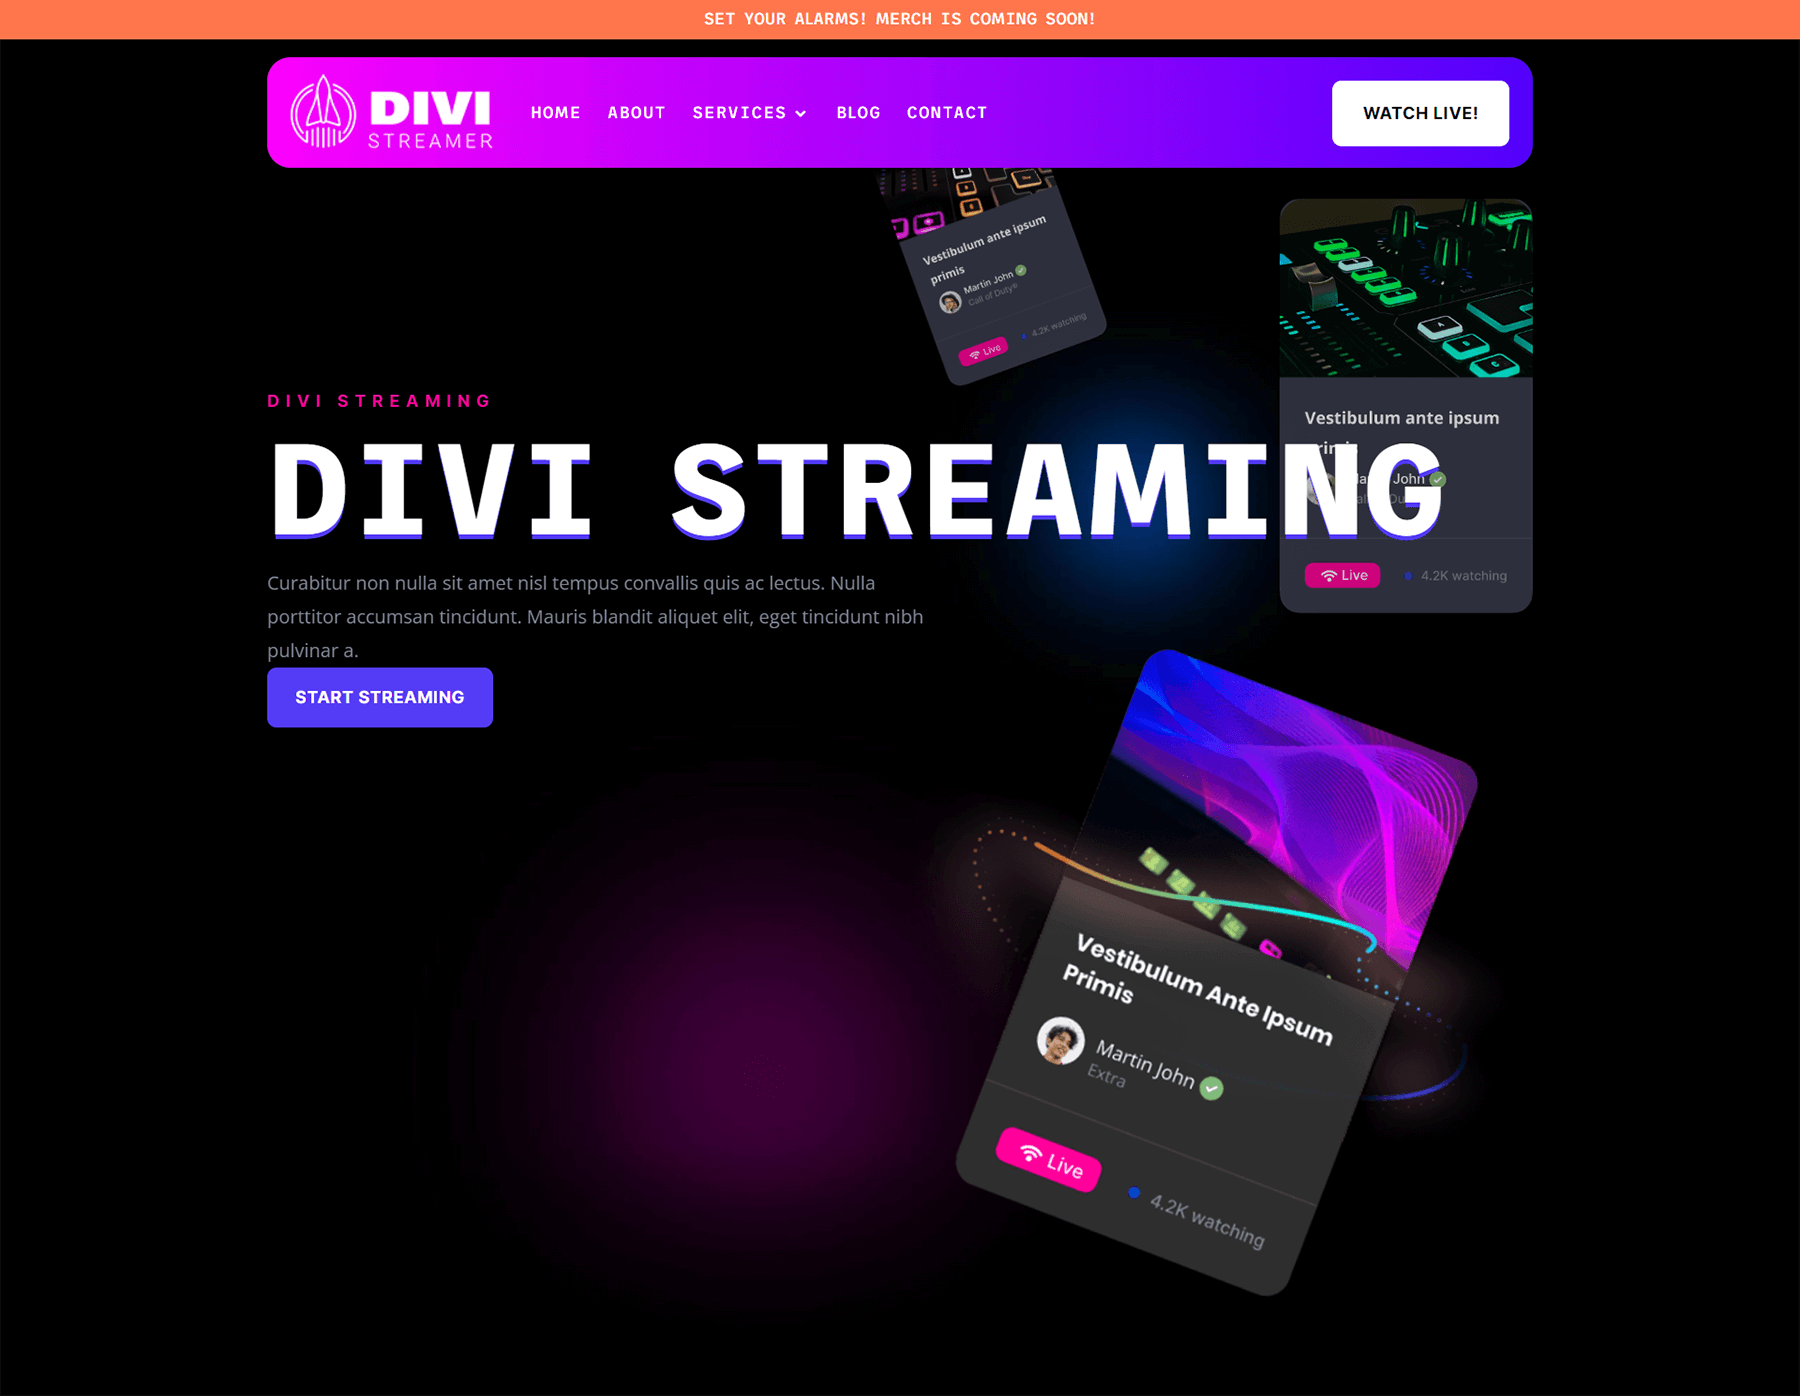 Header design for the Divi Streamer Layout Pack for desktop